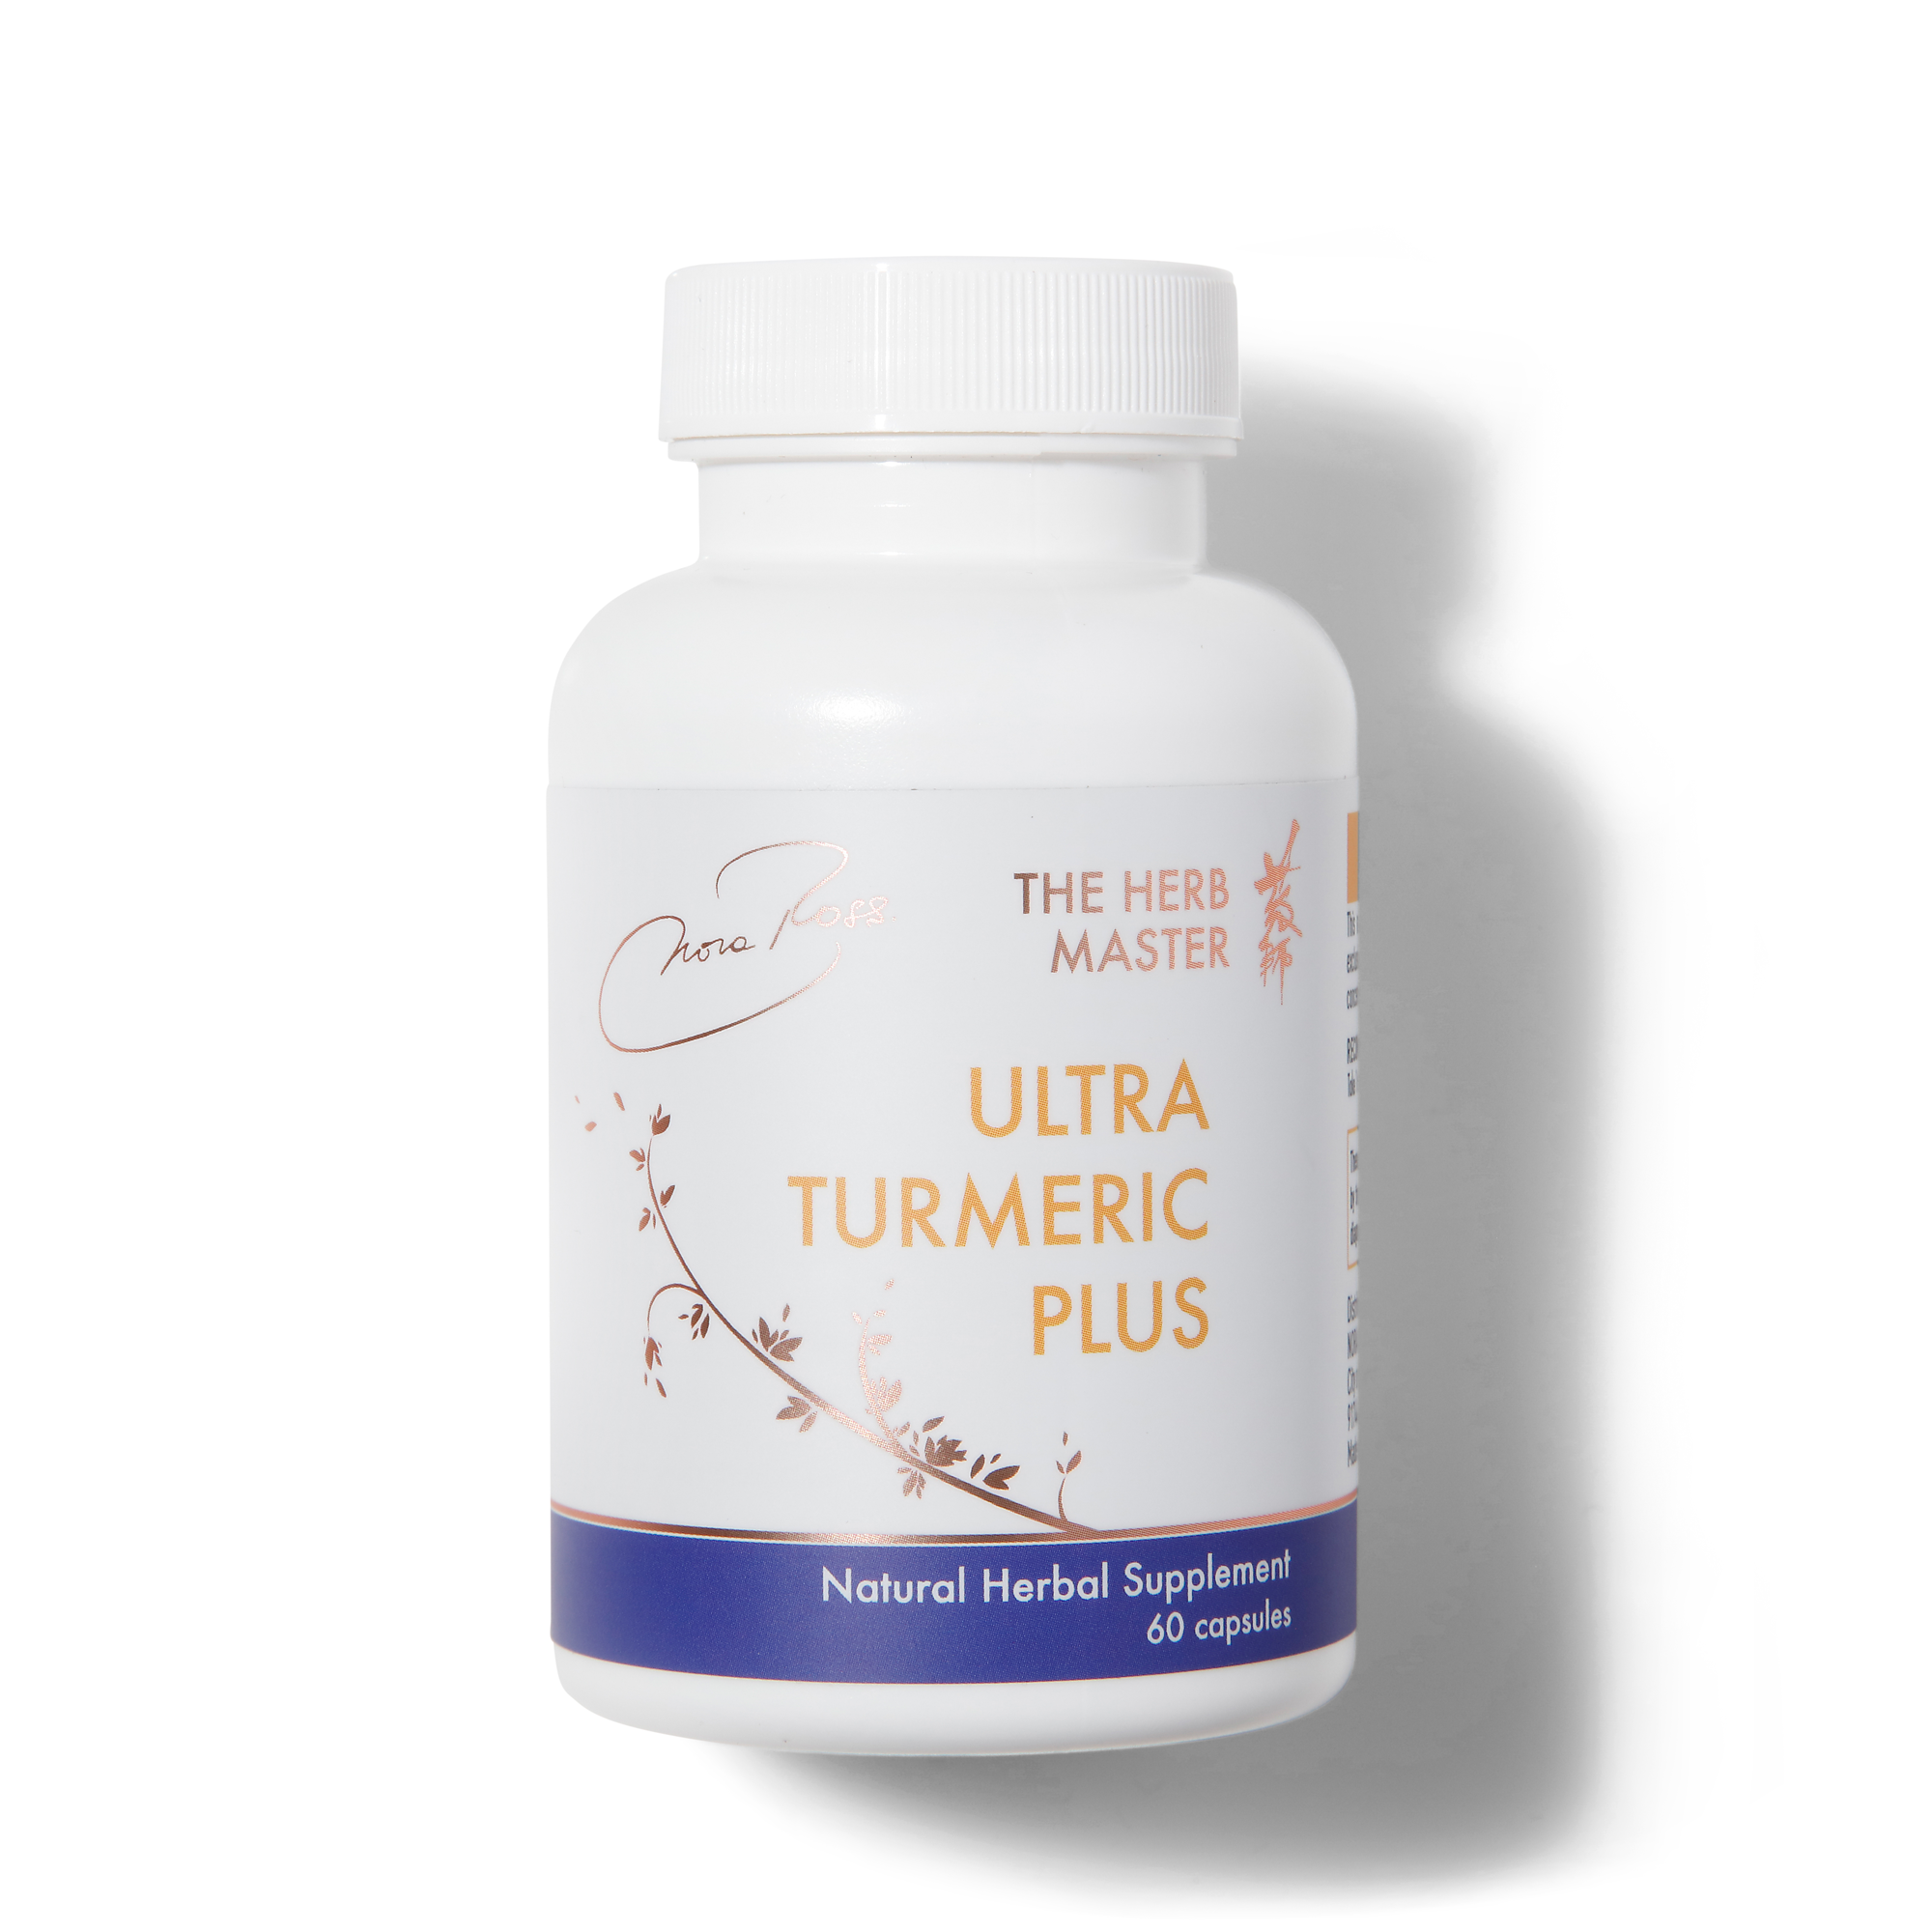 Suplementos Ultra Turmeric Plus® - Articulaciones naturales y apoyo inflamatorio saludable con Goldthread y Skullcap